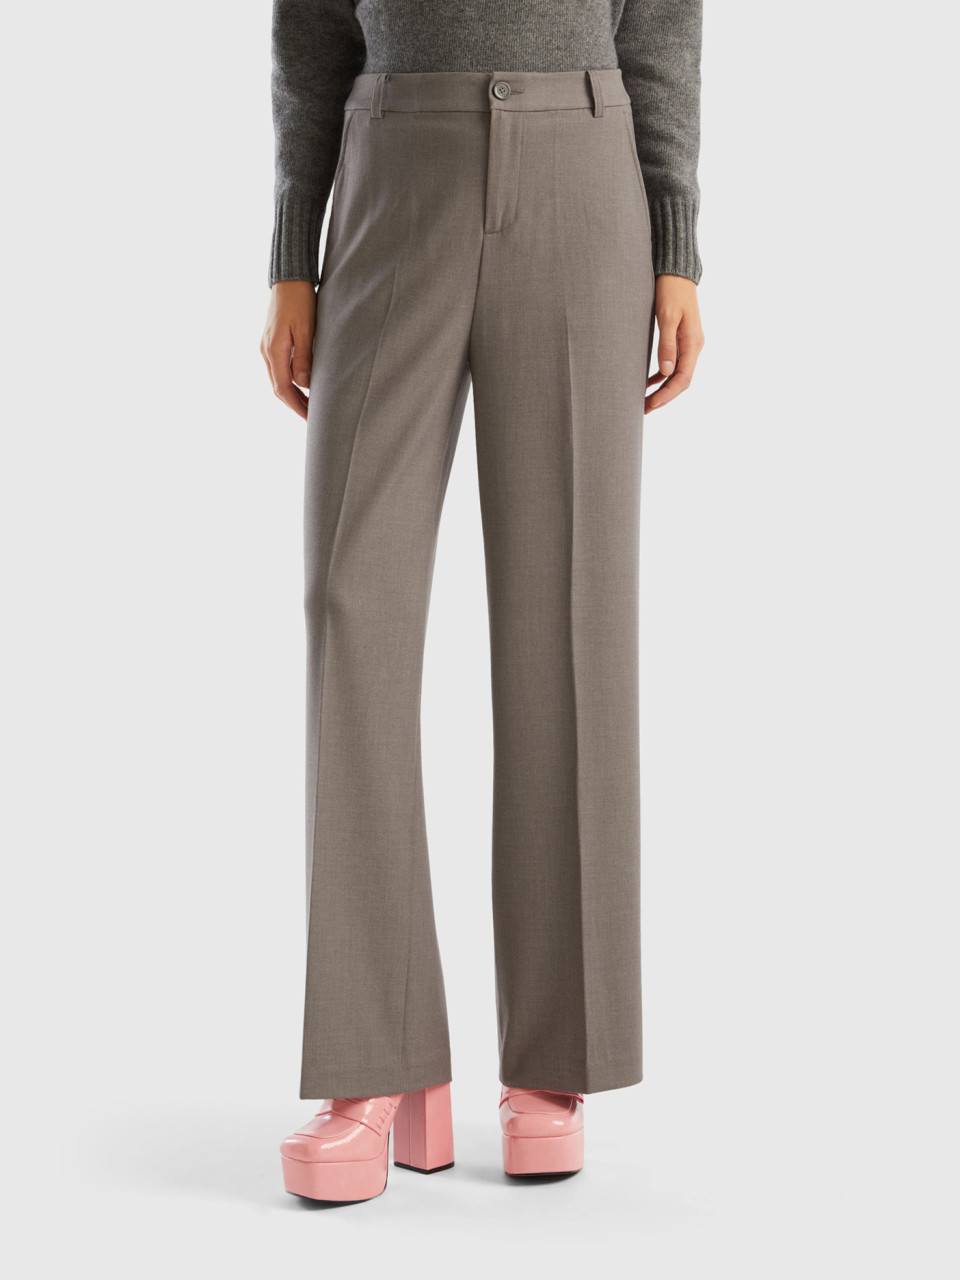 Benetton, Wide Flannel Trousers, Gray, Women